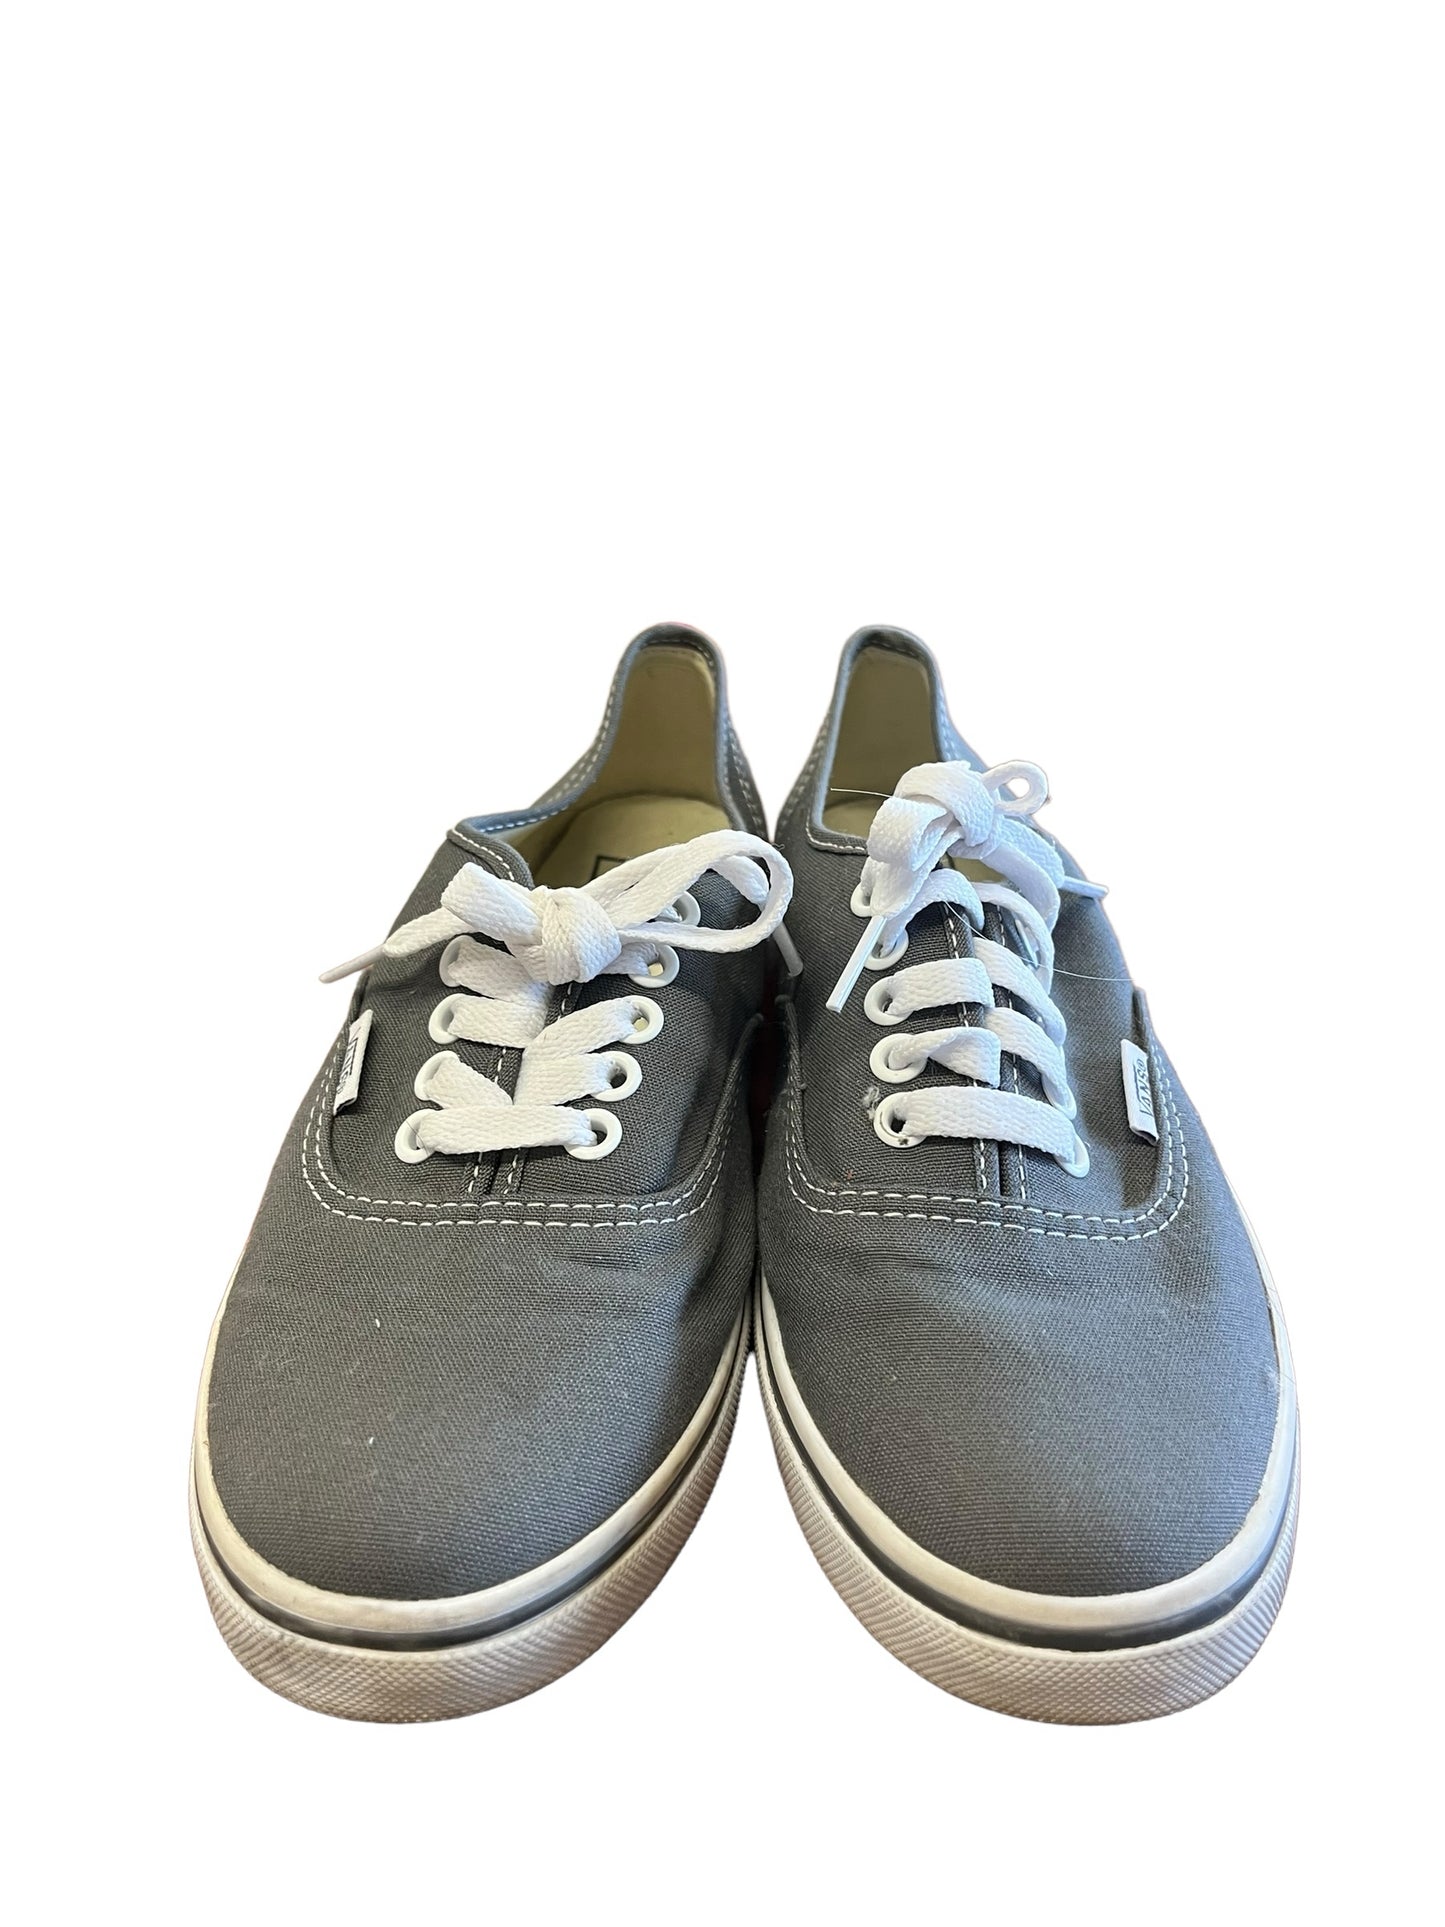 Vans Size 6 Gray sneakers